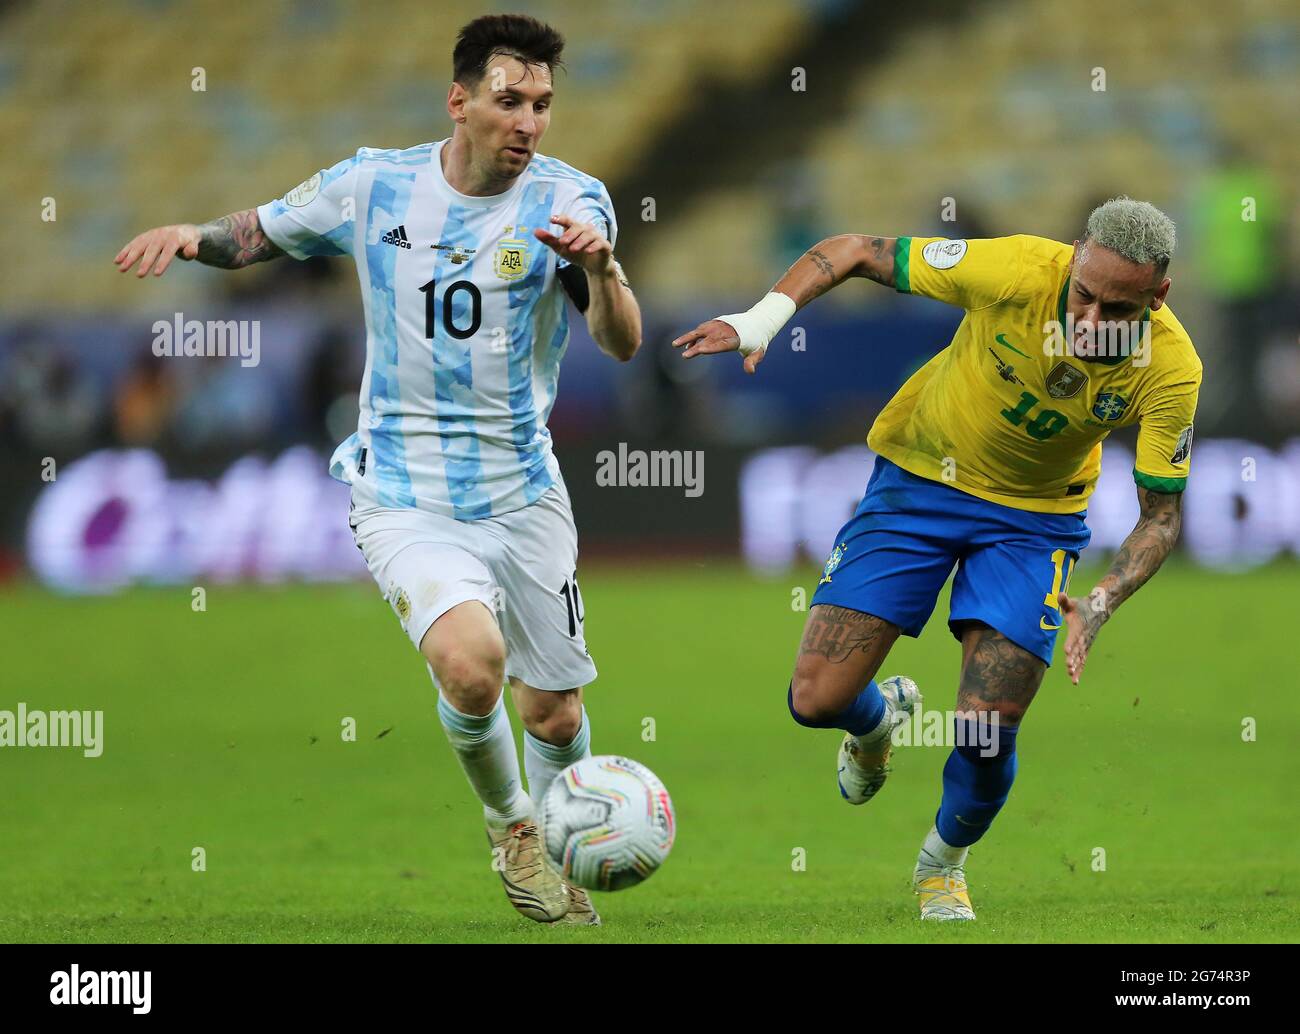 Gostaria que o Neymar ficasse até o final', diz Messi - @aredacao